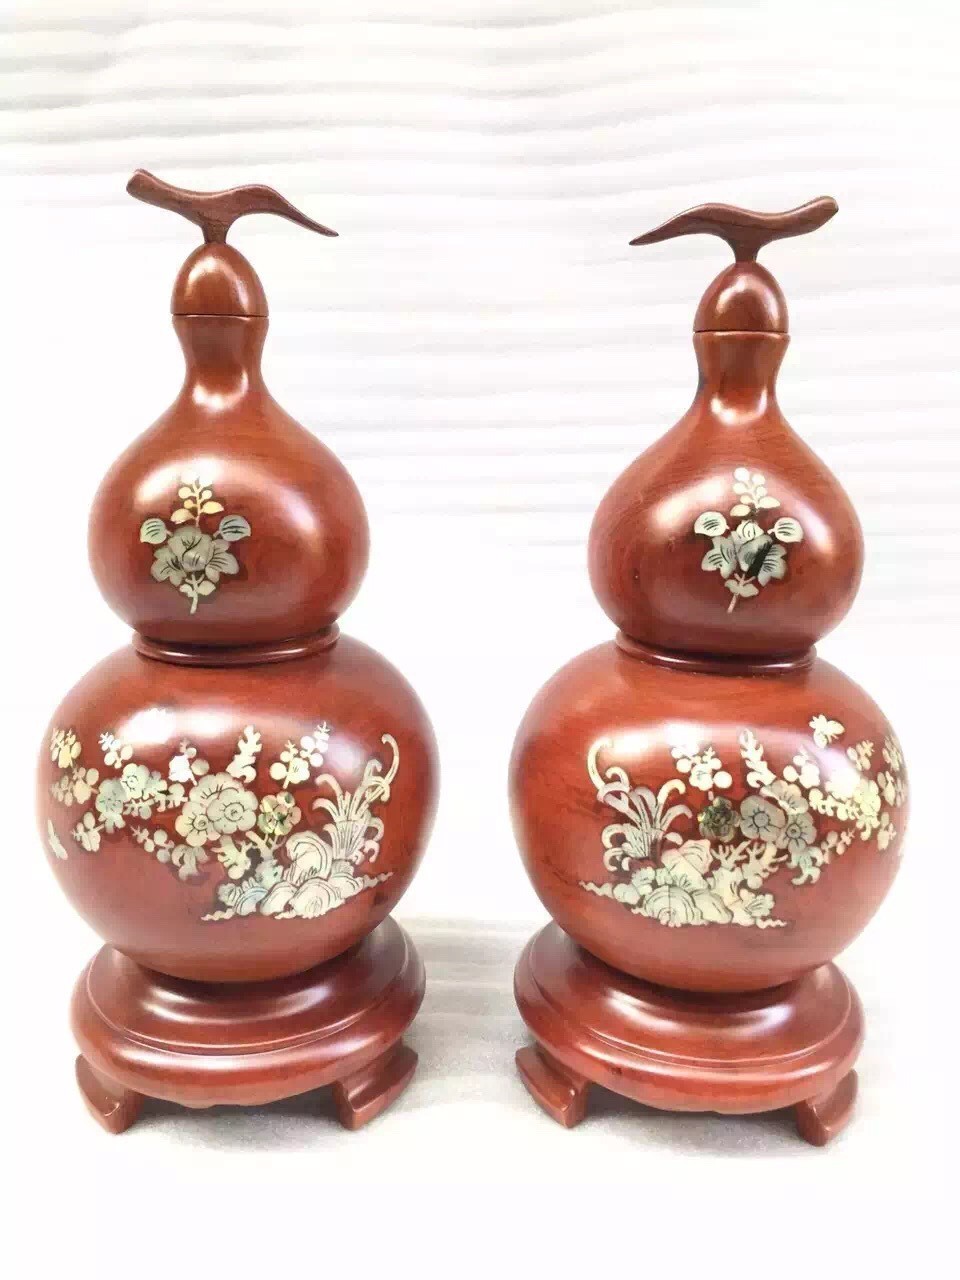 中式实木摆件 花纹图案花瓶摆件 木制木雕工艺品摆件